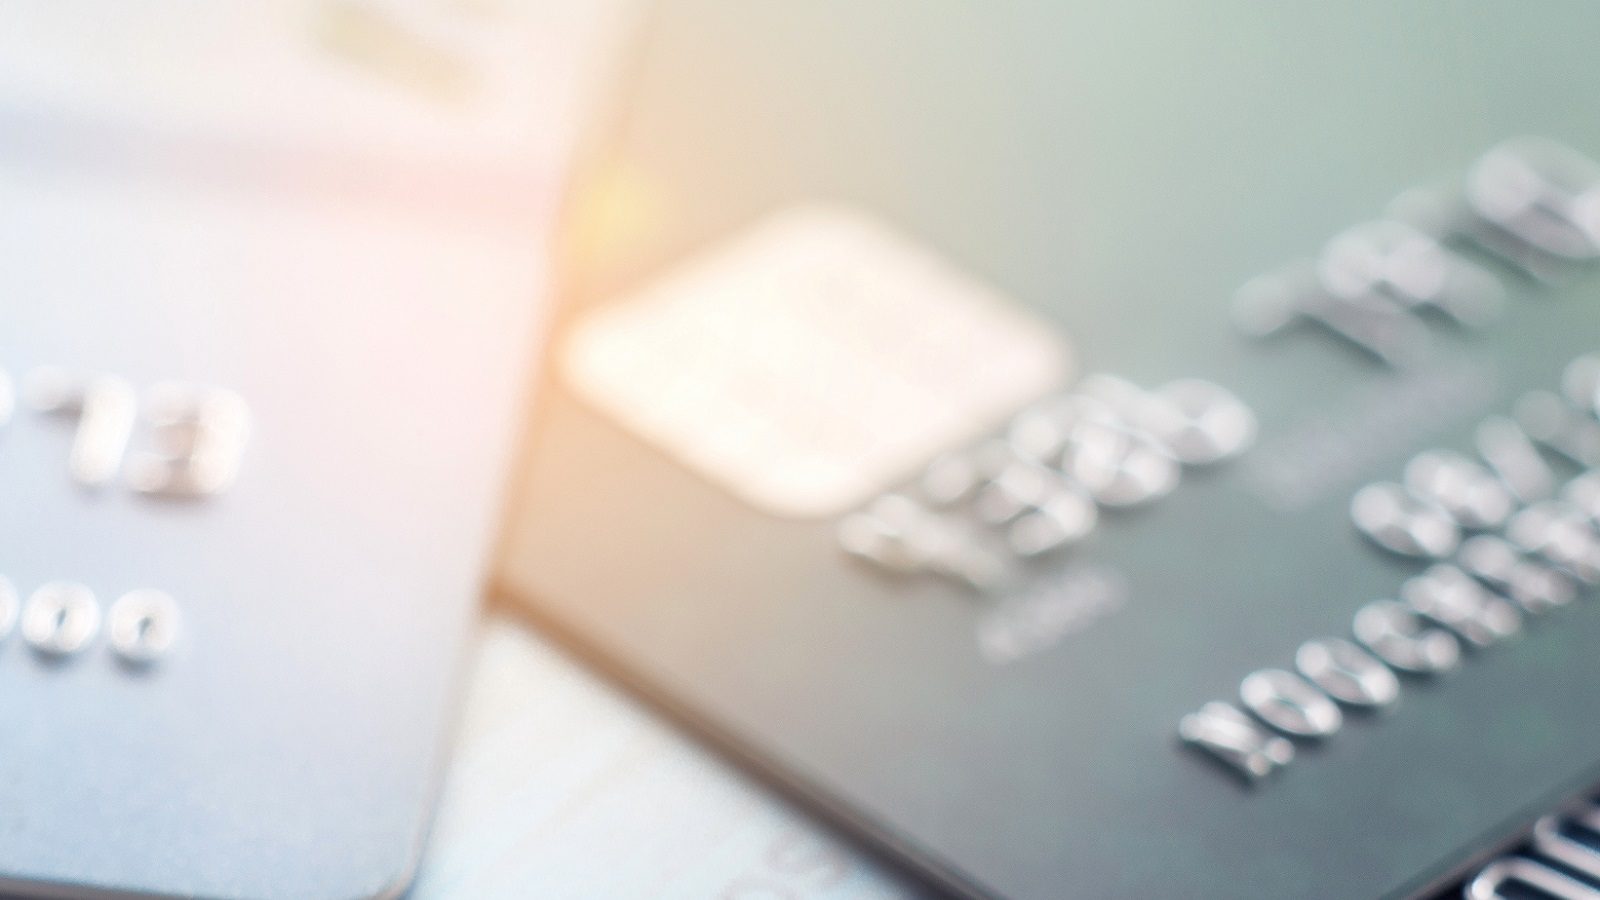 क्रेडिट कार्ड उपयोगकर्ता: बिलिंग चक्र पर यह नया नियम वित्त को बेहतर ढंग से प्रबंधित करने में मदद करेगा